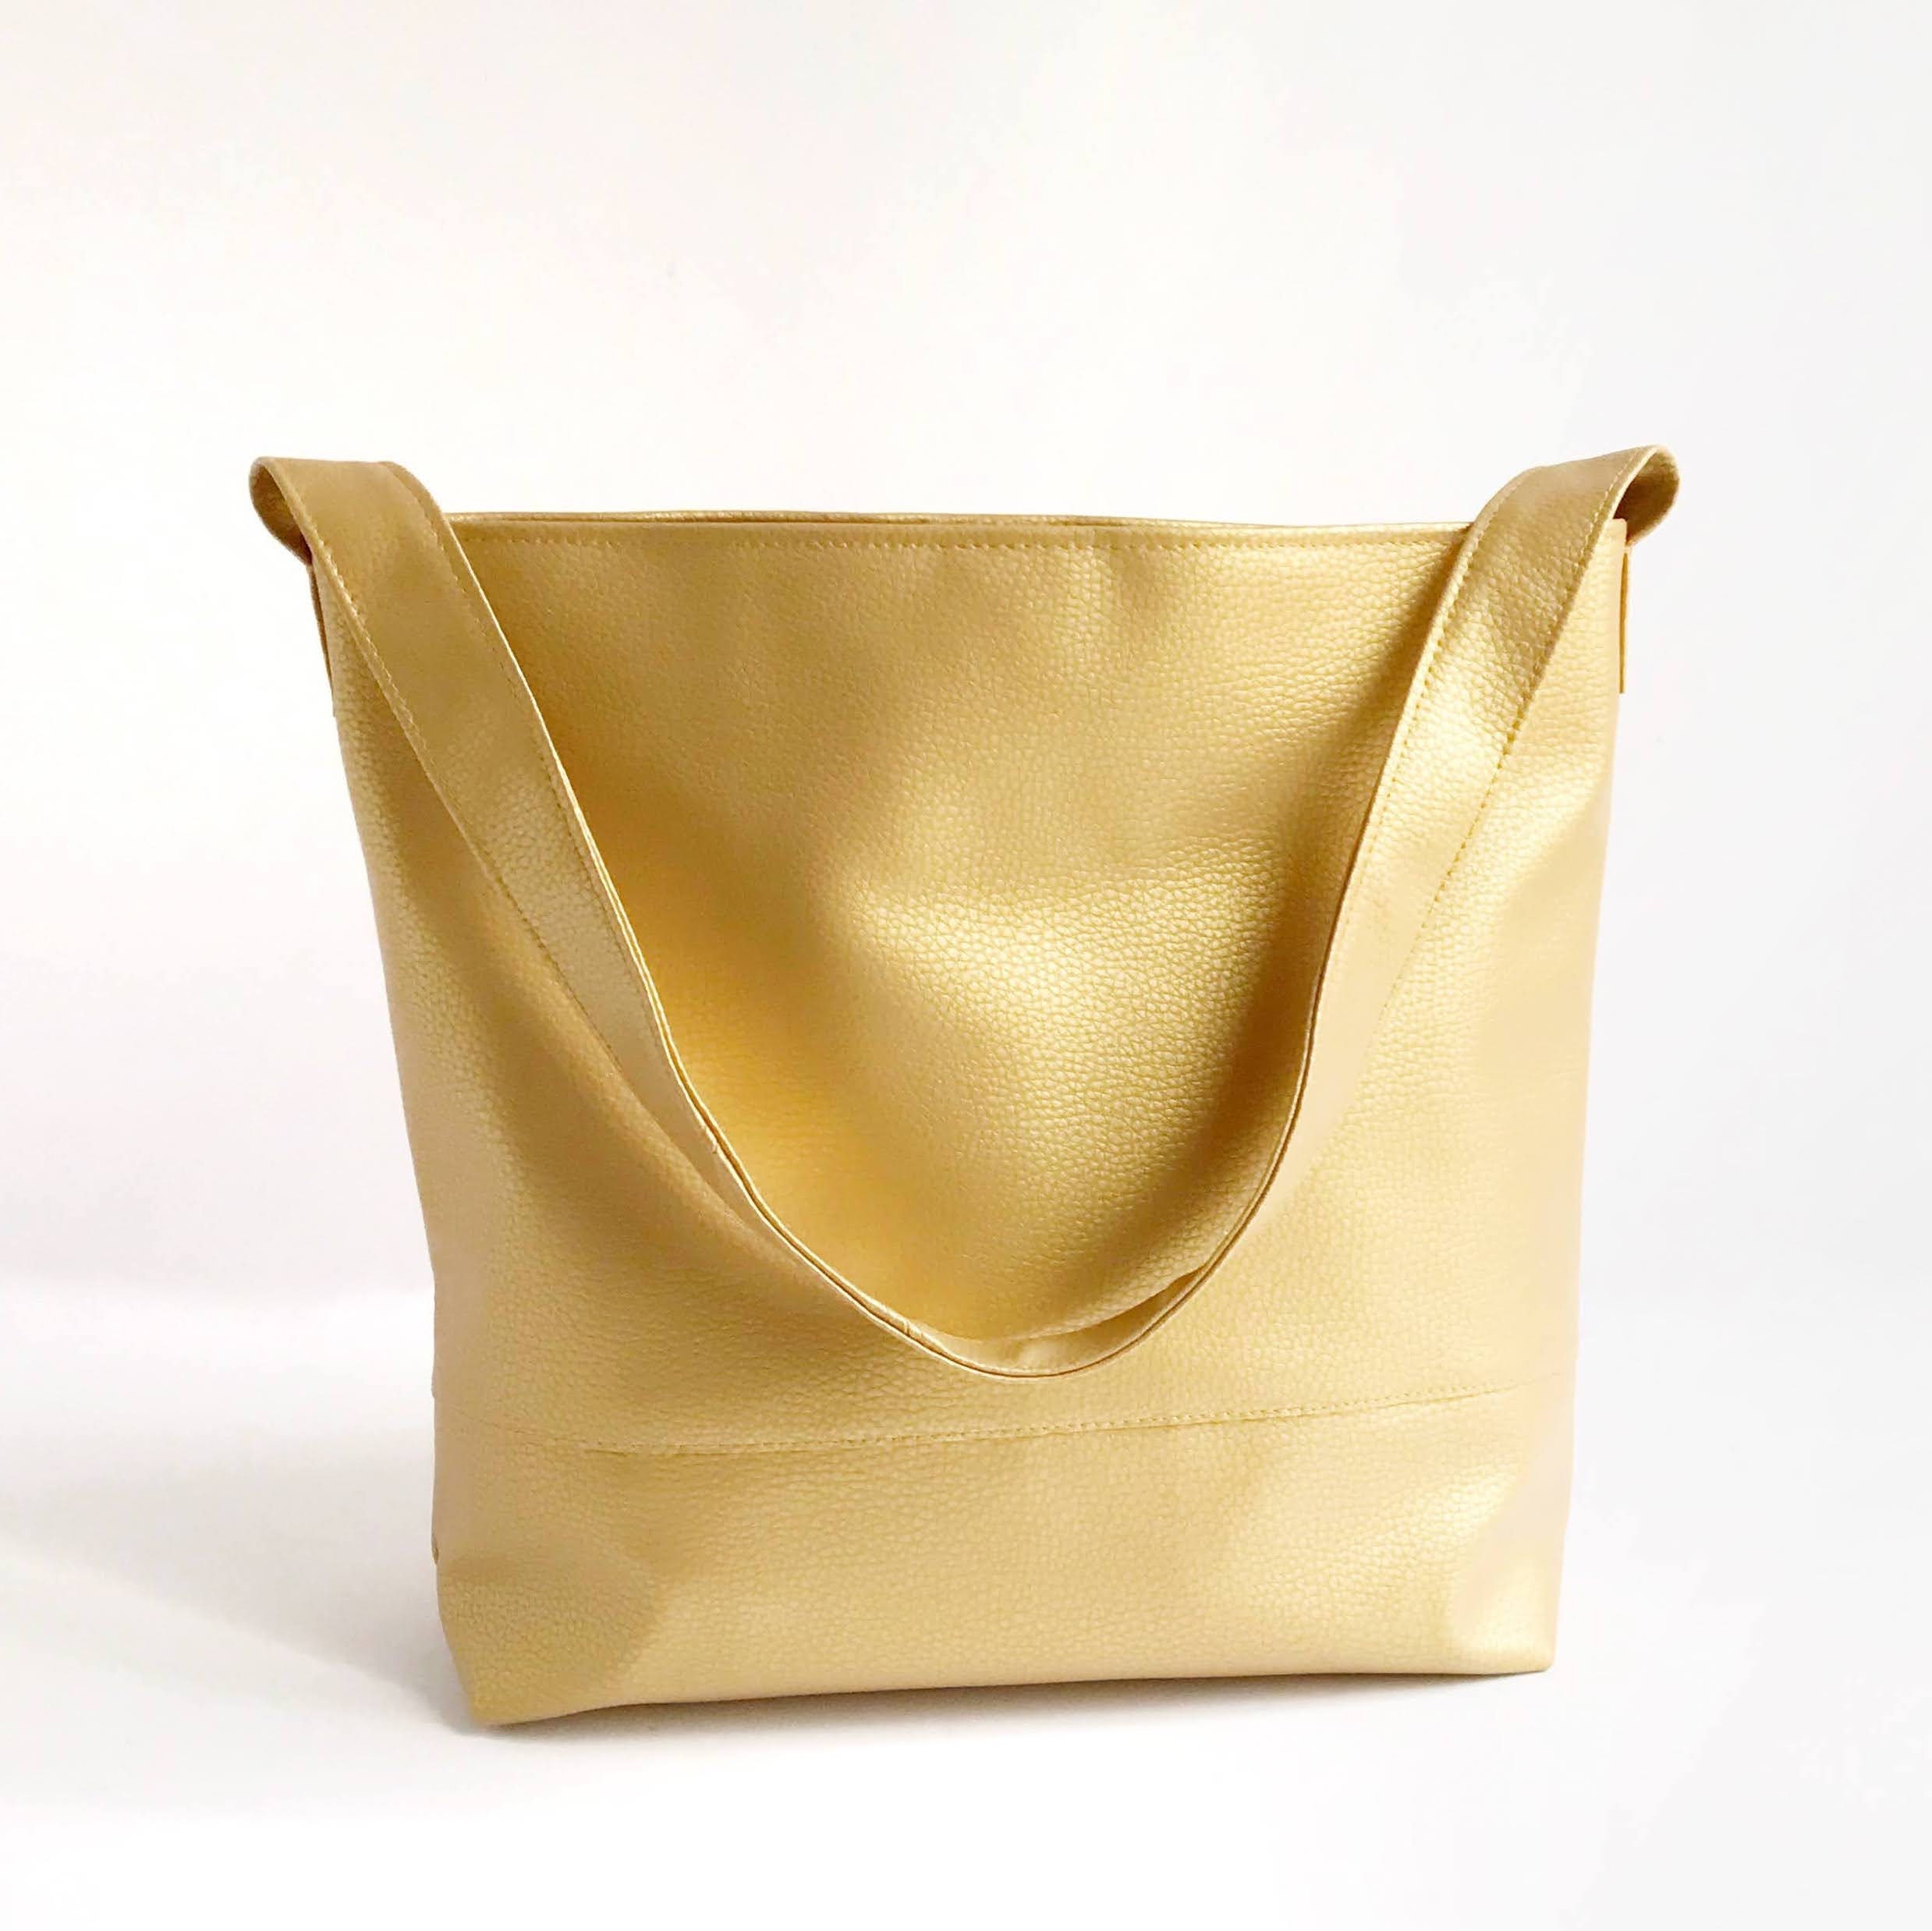 MCM MUNCHEN Hobo Purse Vintage #A9523 Golden Brown Leather Shoulder Bag  *Rare*